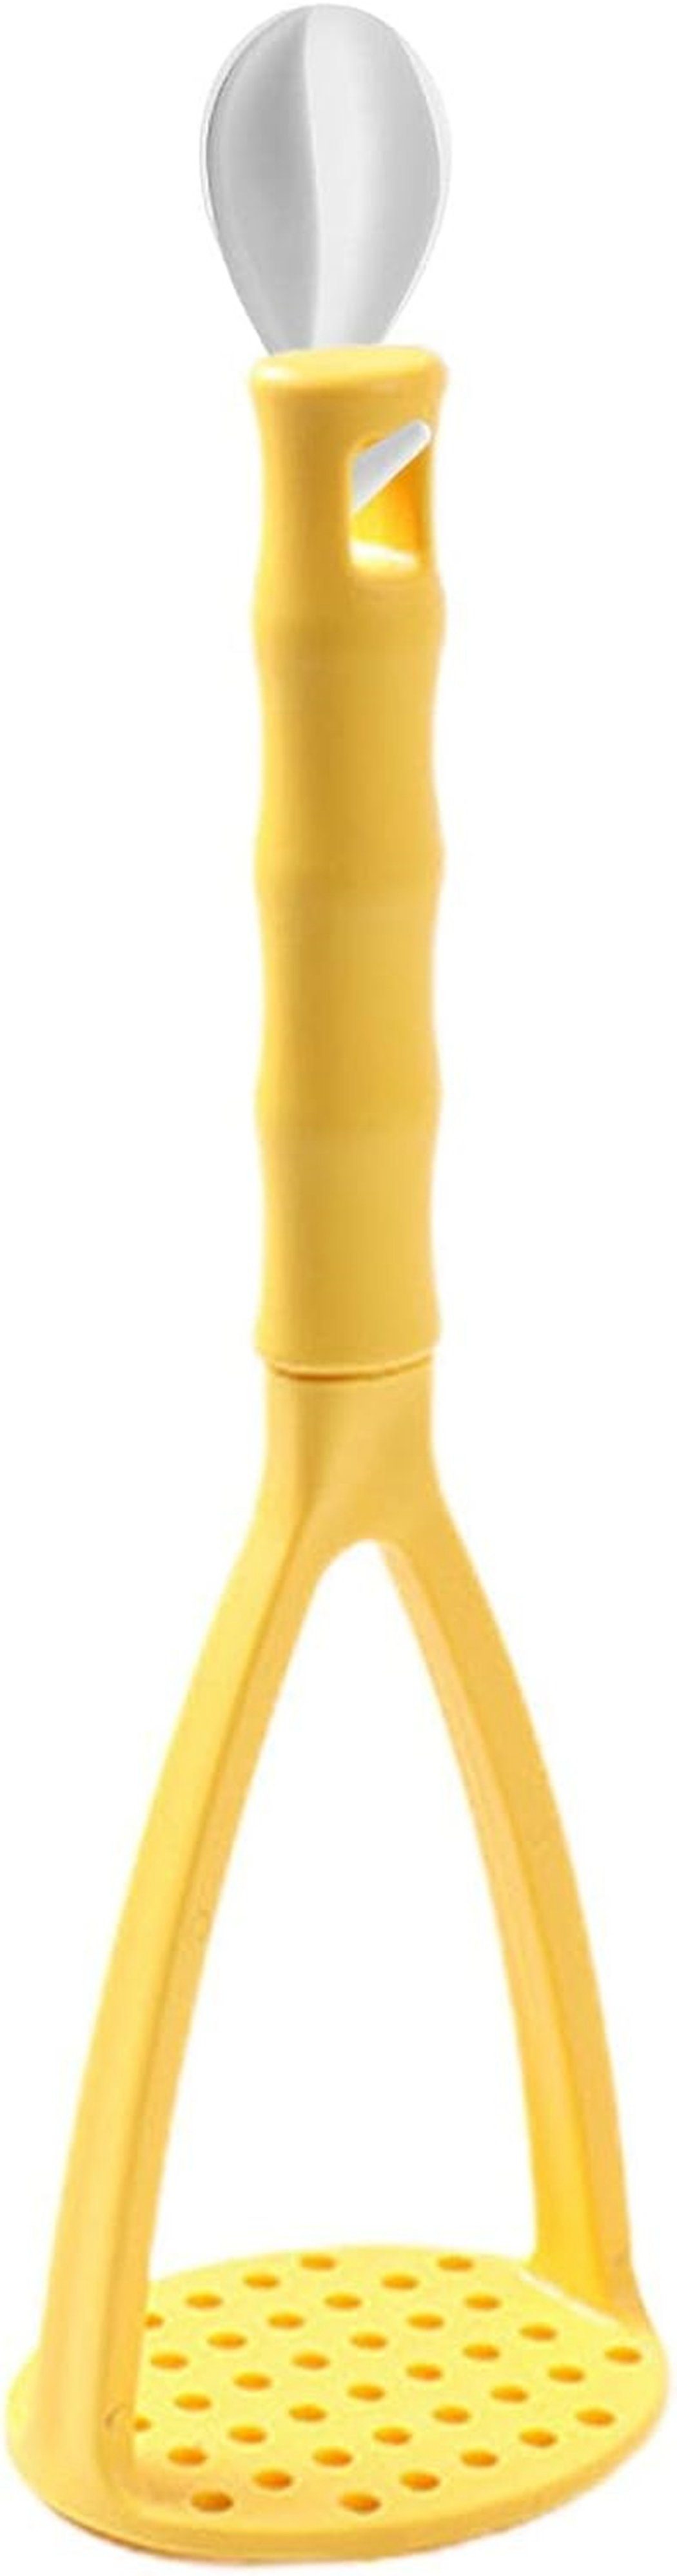 Gelb Kartoffelstampfer TUABUR Kartoffelpüree-Artefakt-Kürbisstampfer-Werkzeug